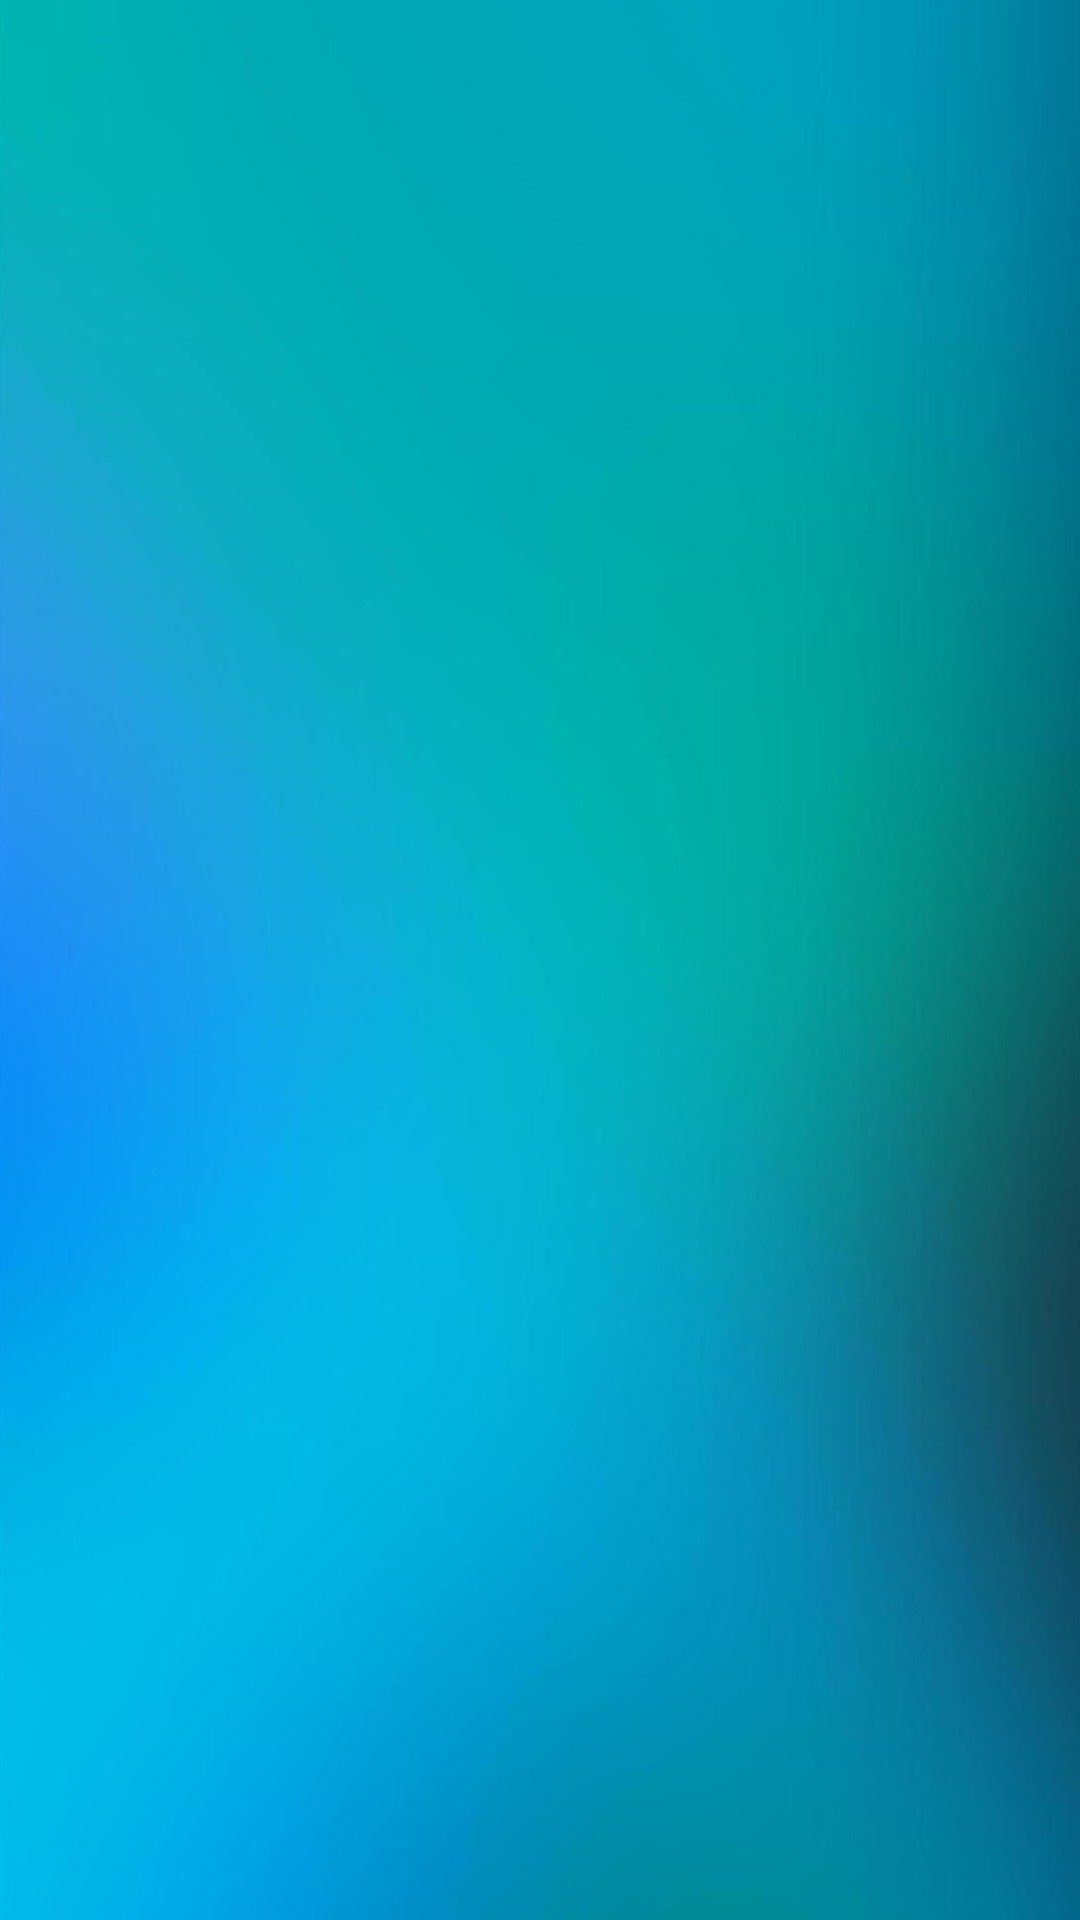 1080x1920 Gradient (blue) Blue Backgrounds, Blue Wallpapers, Wallpaper Backgrounds,  Blue Background Wallpapers